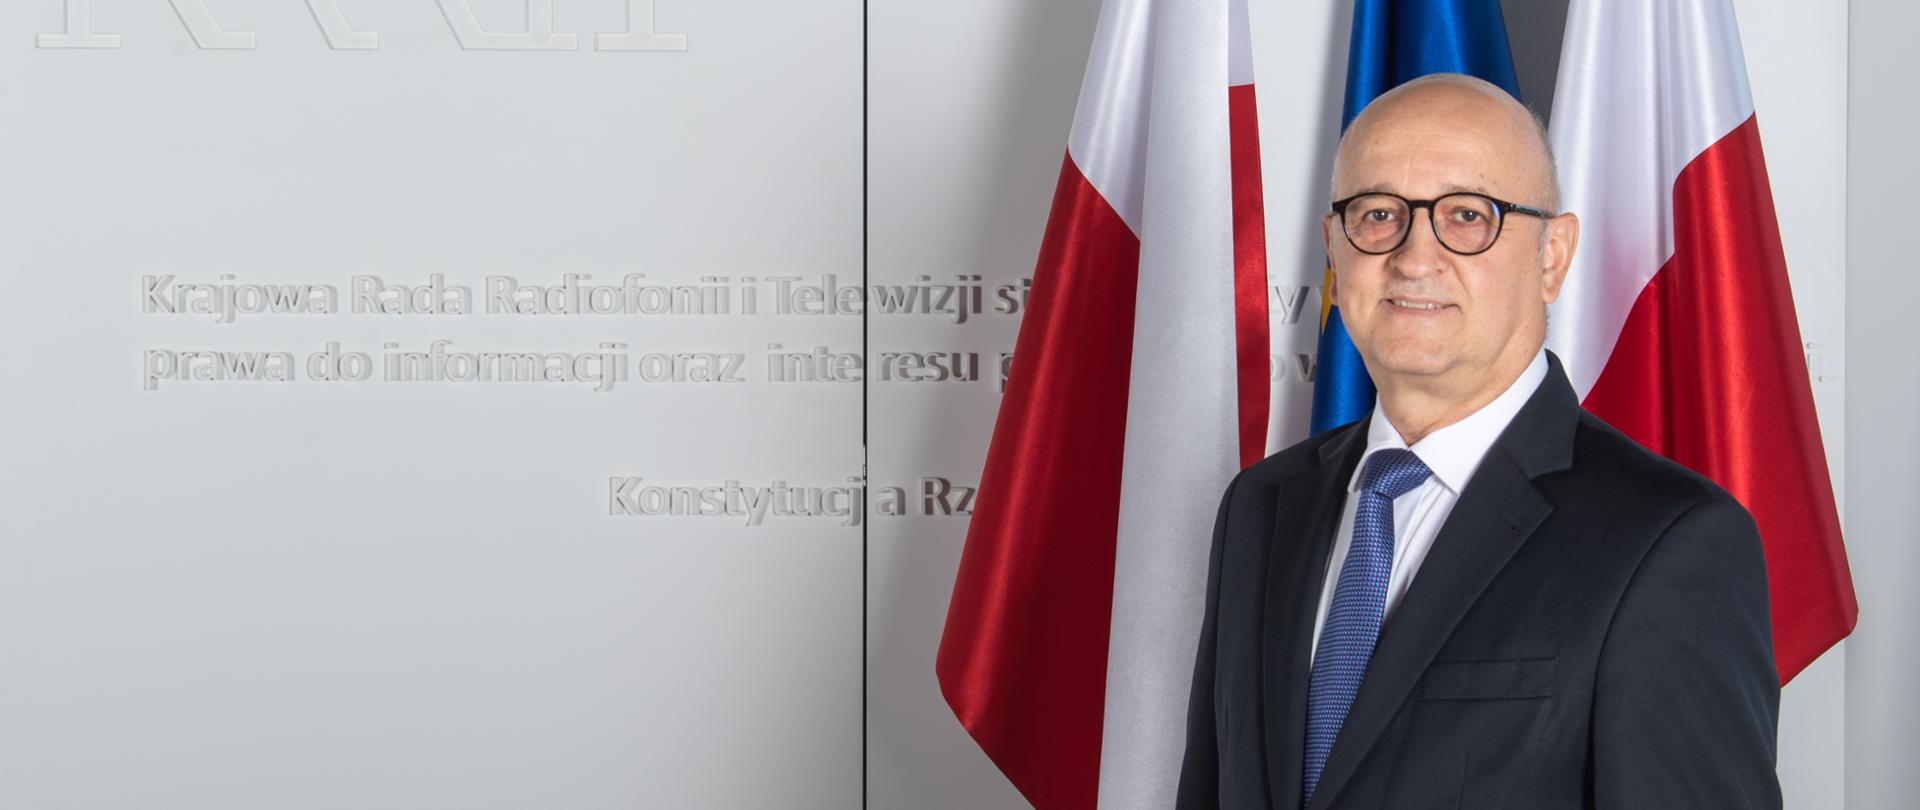 Członek KRRiT Tadeusz Kowalski, za plecami dwie biało-czerwone flagi, pomiędzy nimi niebieska fala Unii Europejskiej 